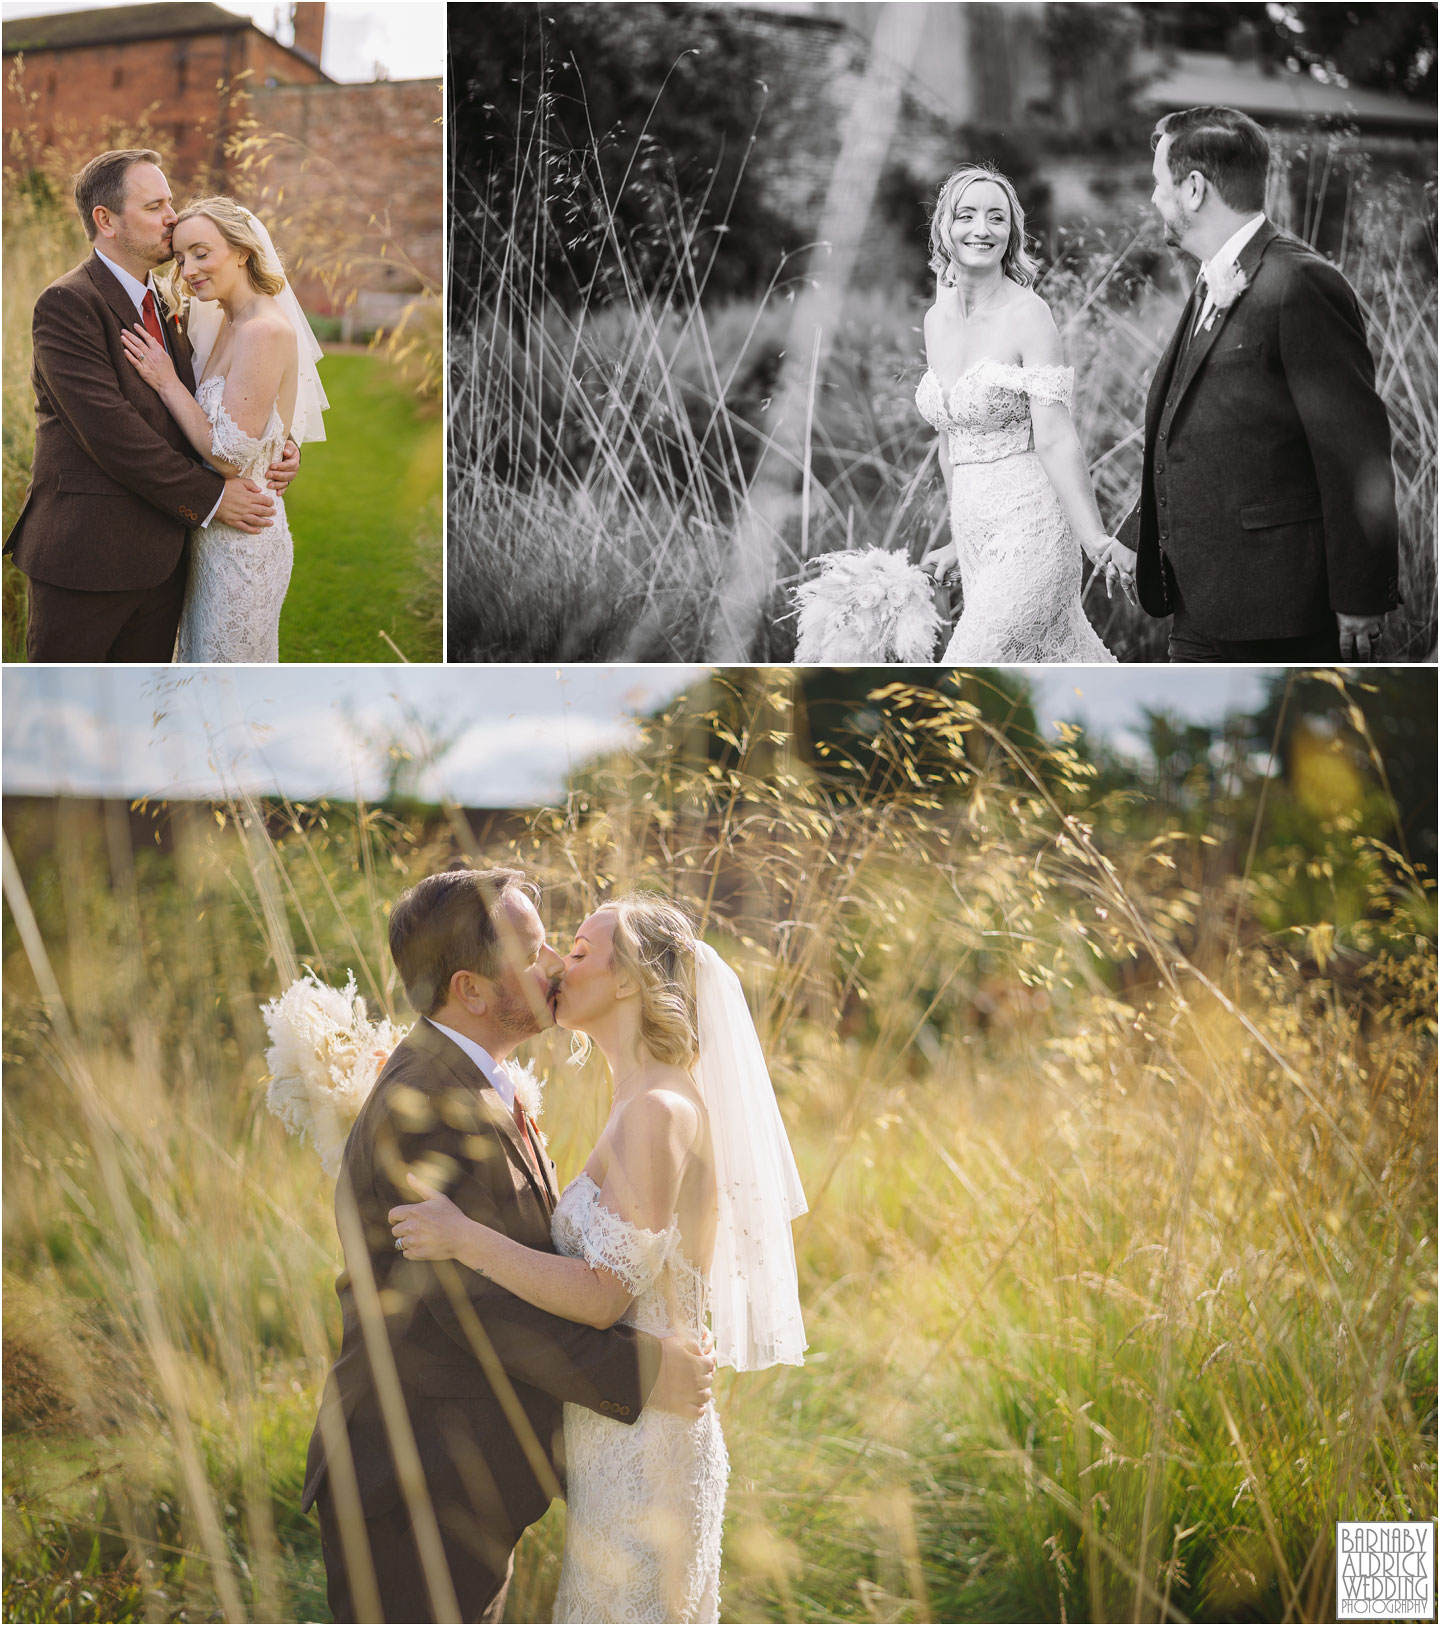 Wedding photos at Cannon Hall Farm, Cannon Hall Barnsley Wedding Photos, Cannon Hall Wedding Photographer, Cannon Hall Farm Wedding